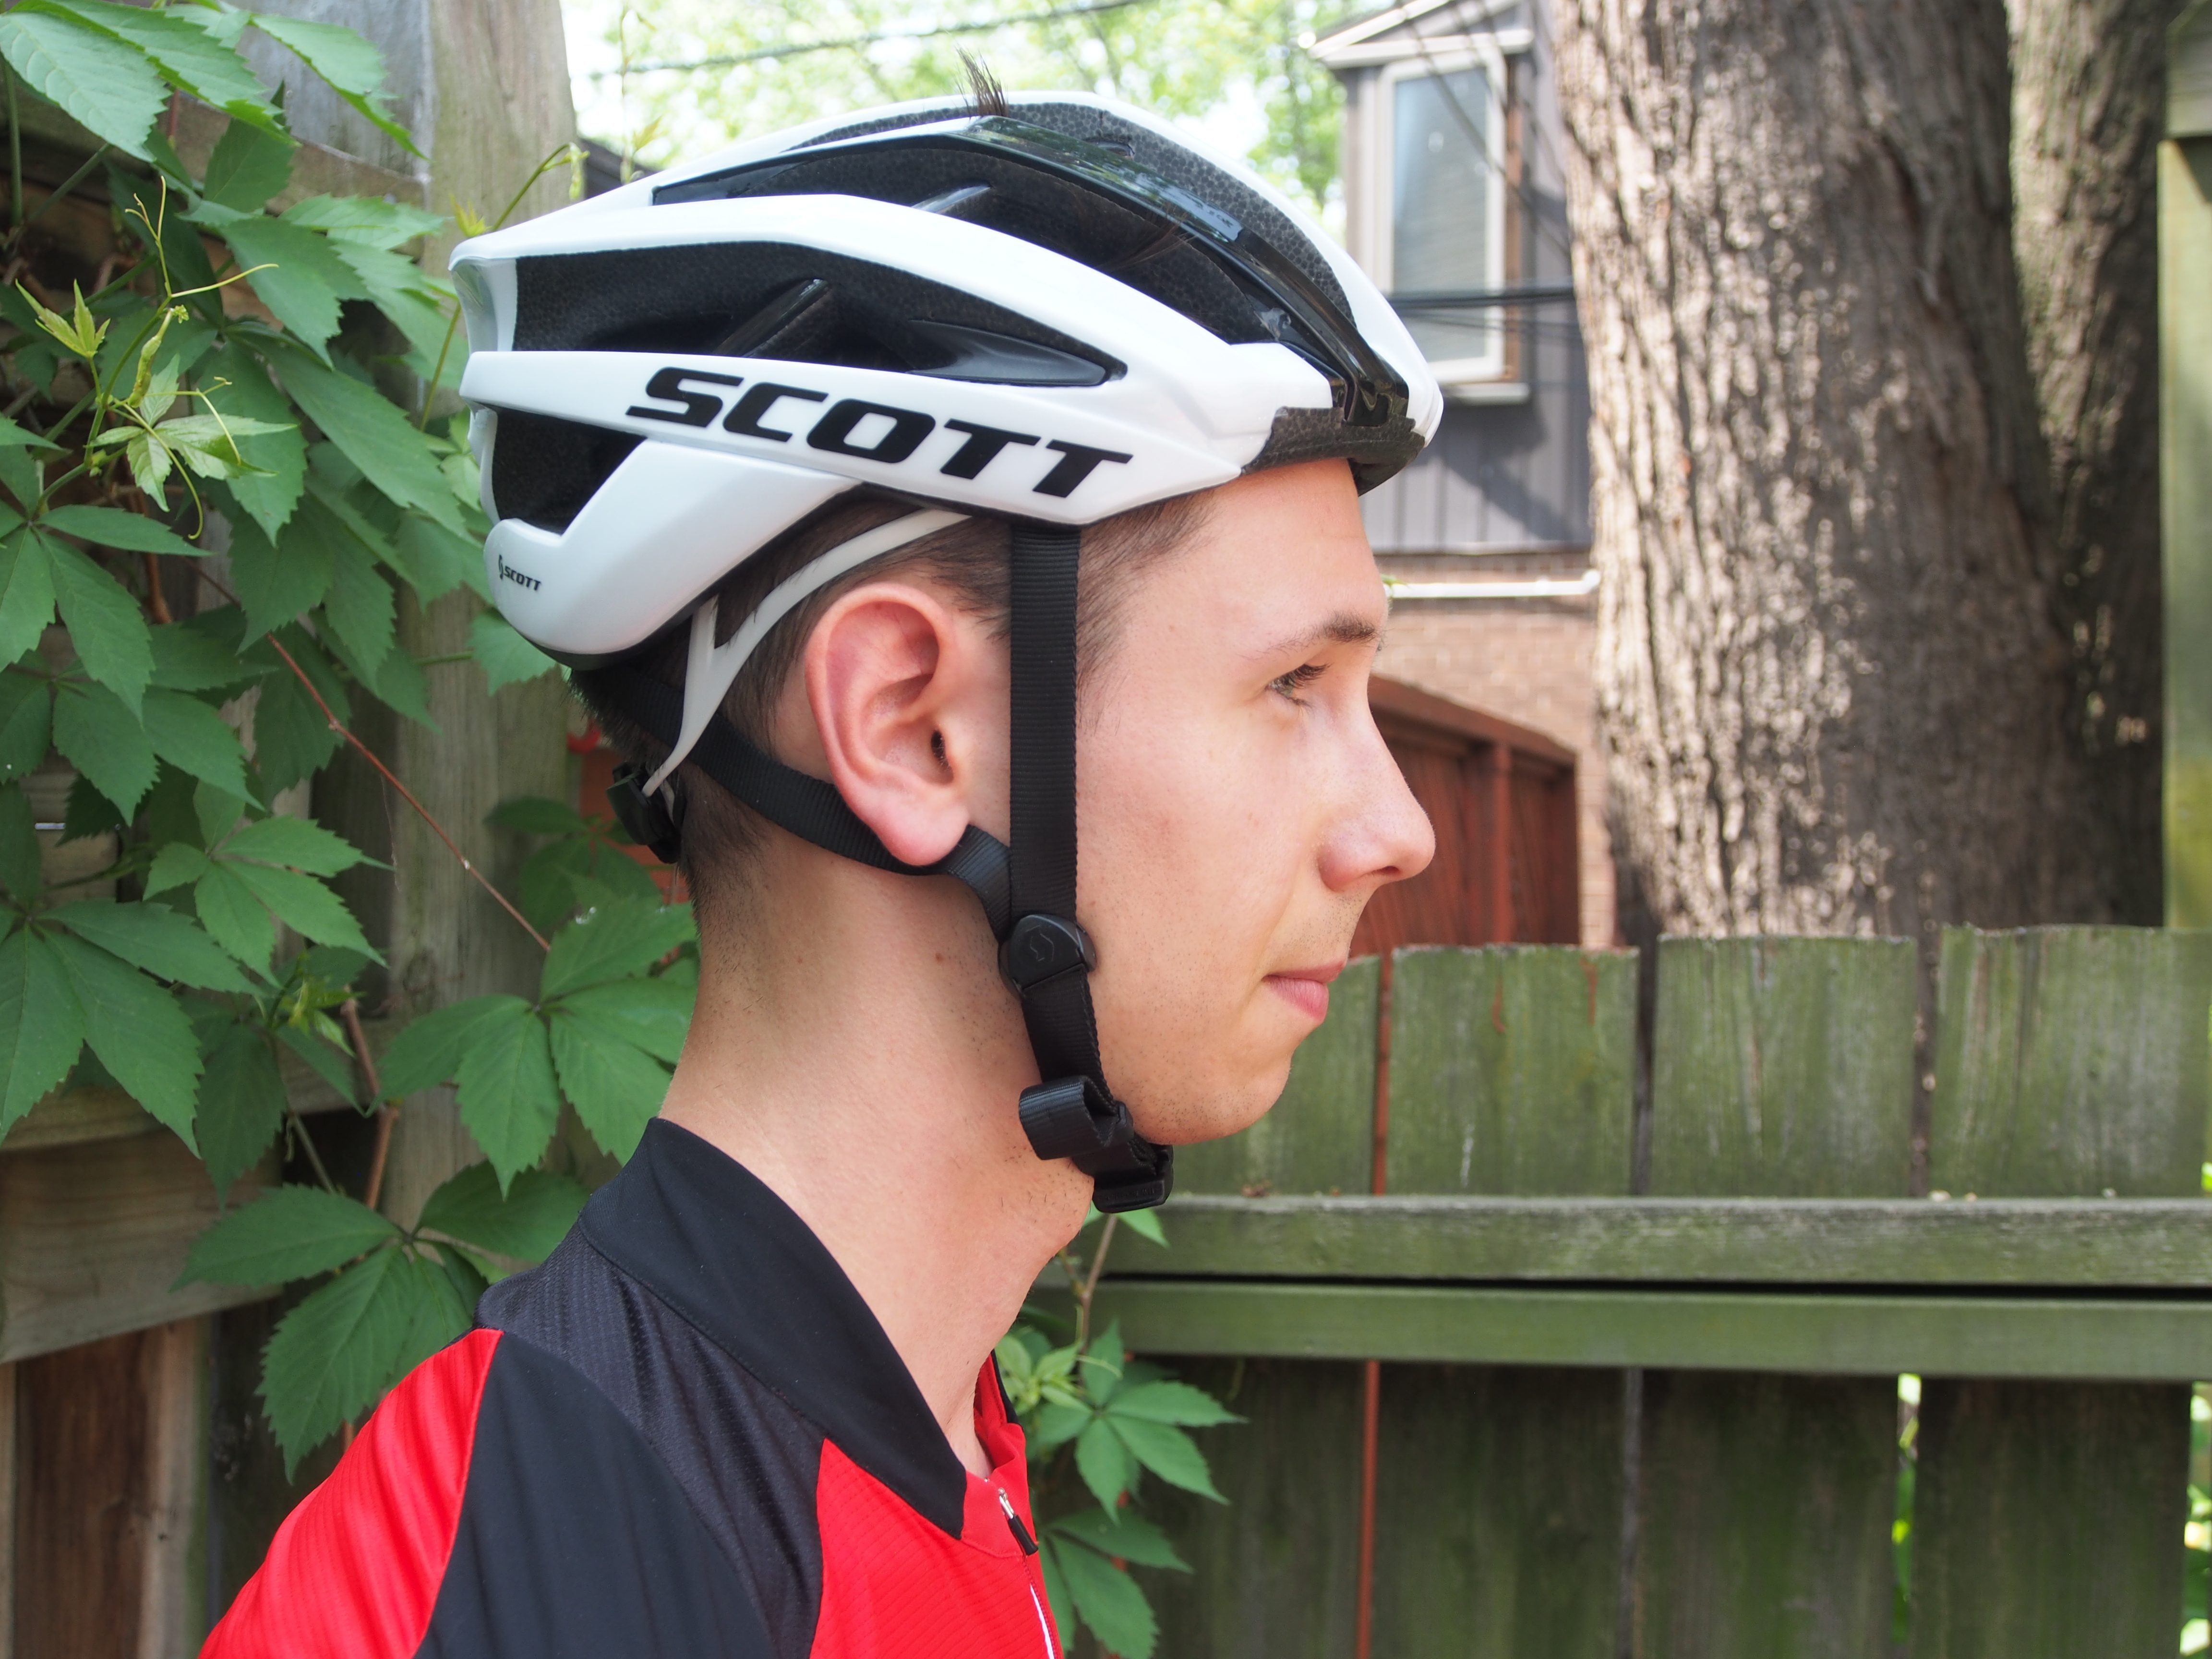 Scott Vanish 2 helmet review - Canadian 